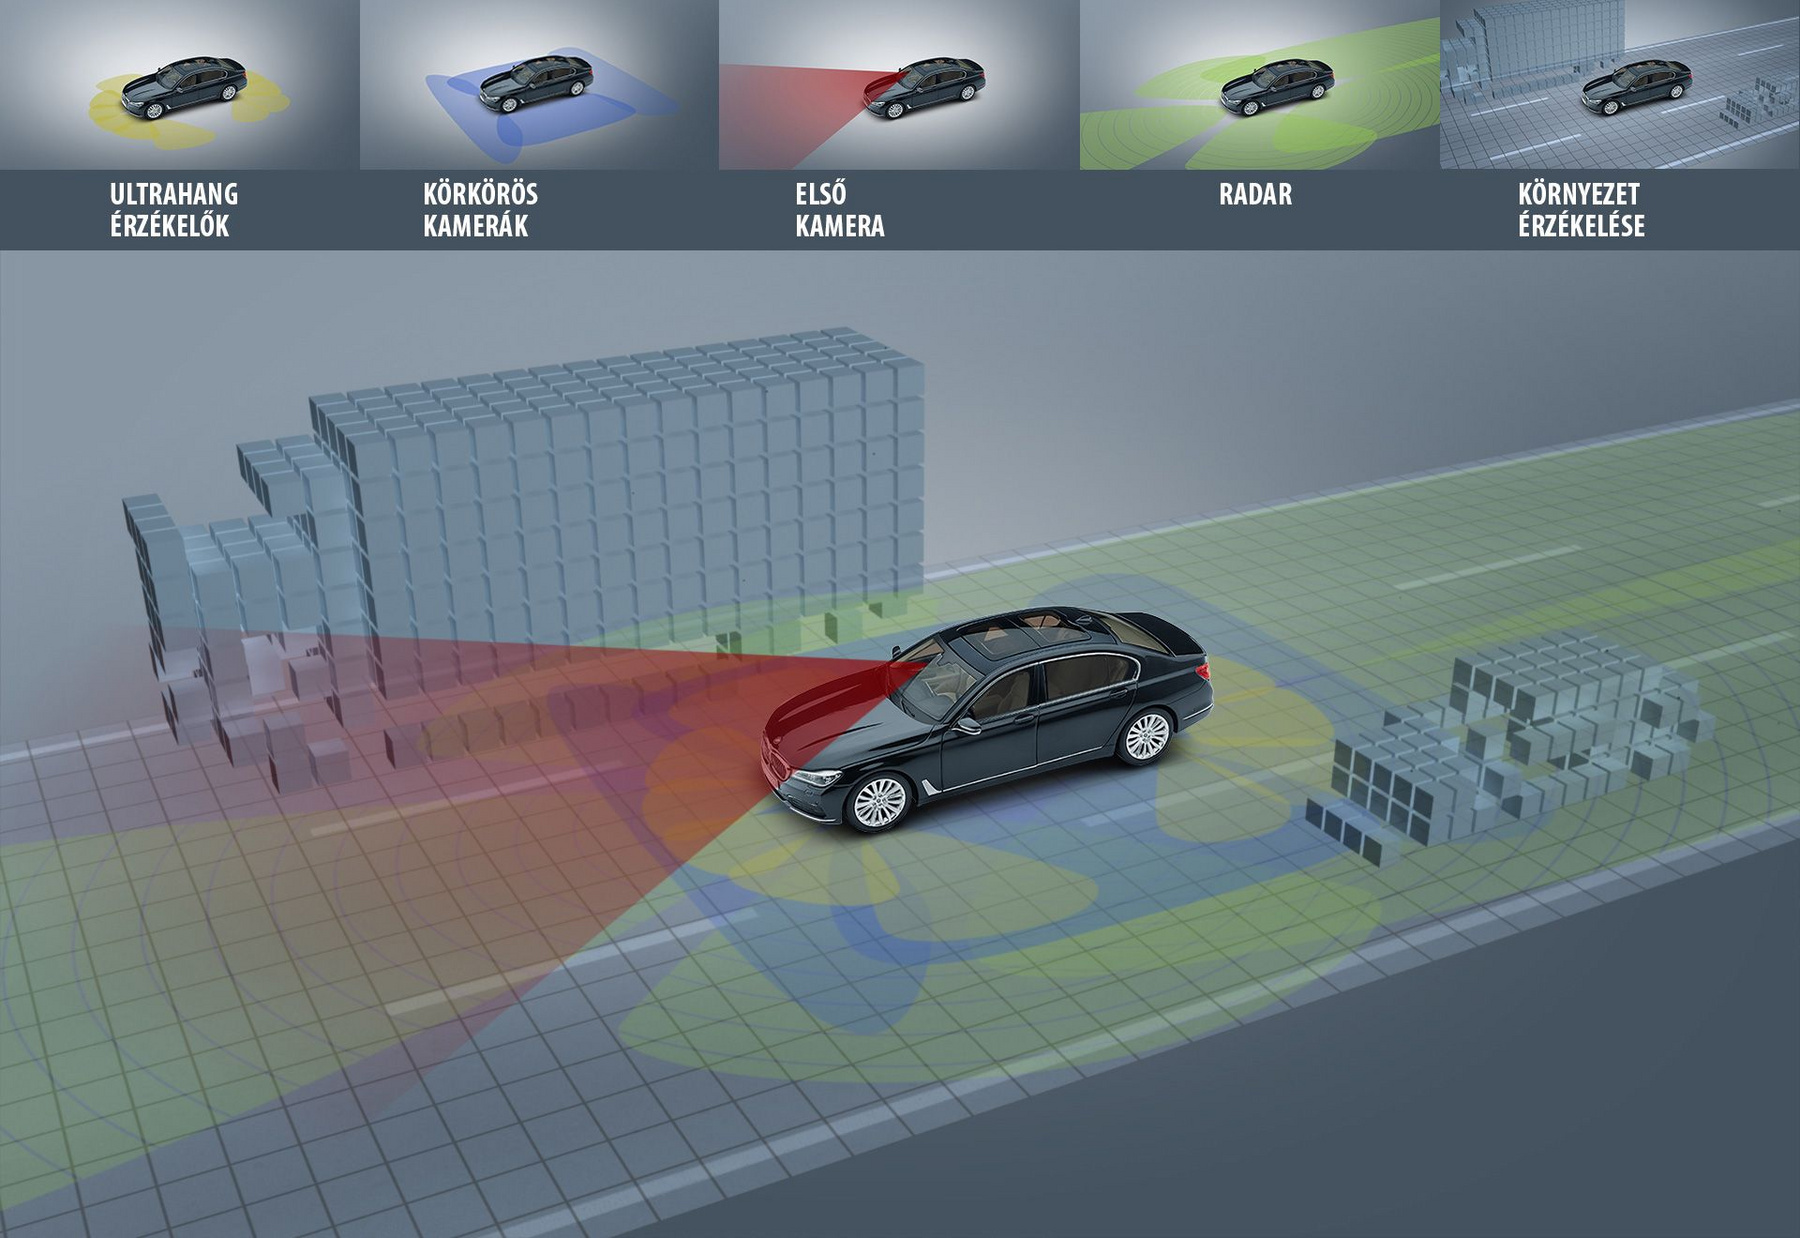 Autó-felhő kapcsolattal olyan járművek is információt szerezhetnek egymás mozgásáról, vagy a velük történt eseményekről, amelyek nem is látják egymást